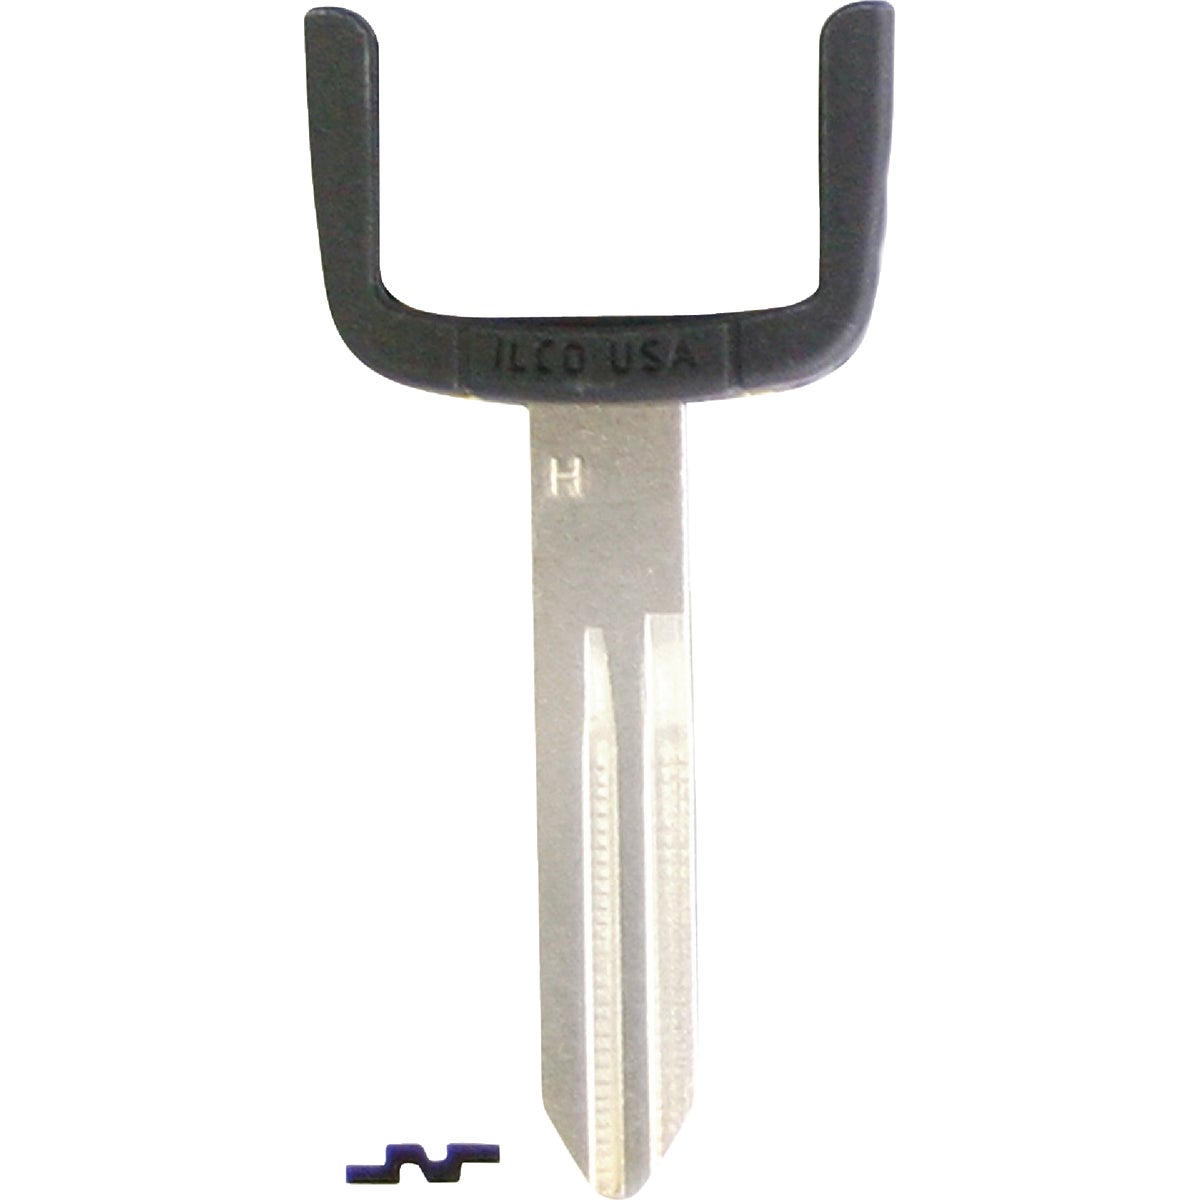 ILCO Nissan EZ Clone Chip Key Blade, EB3-H-NI02